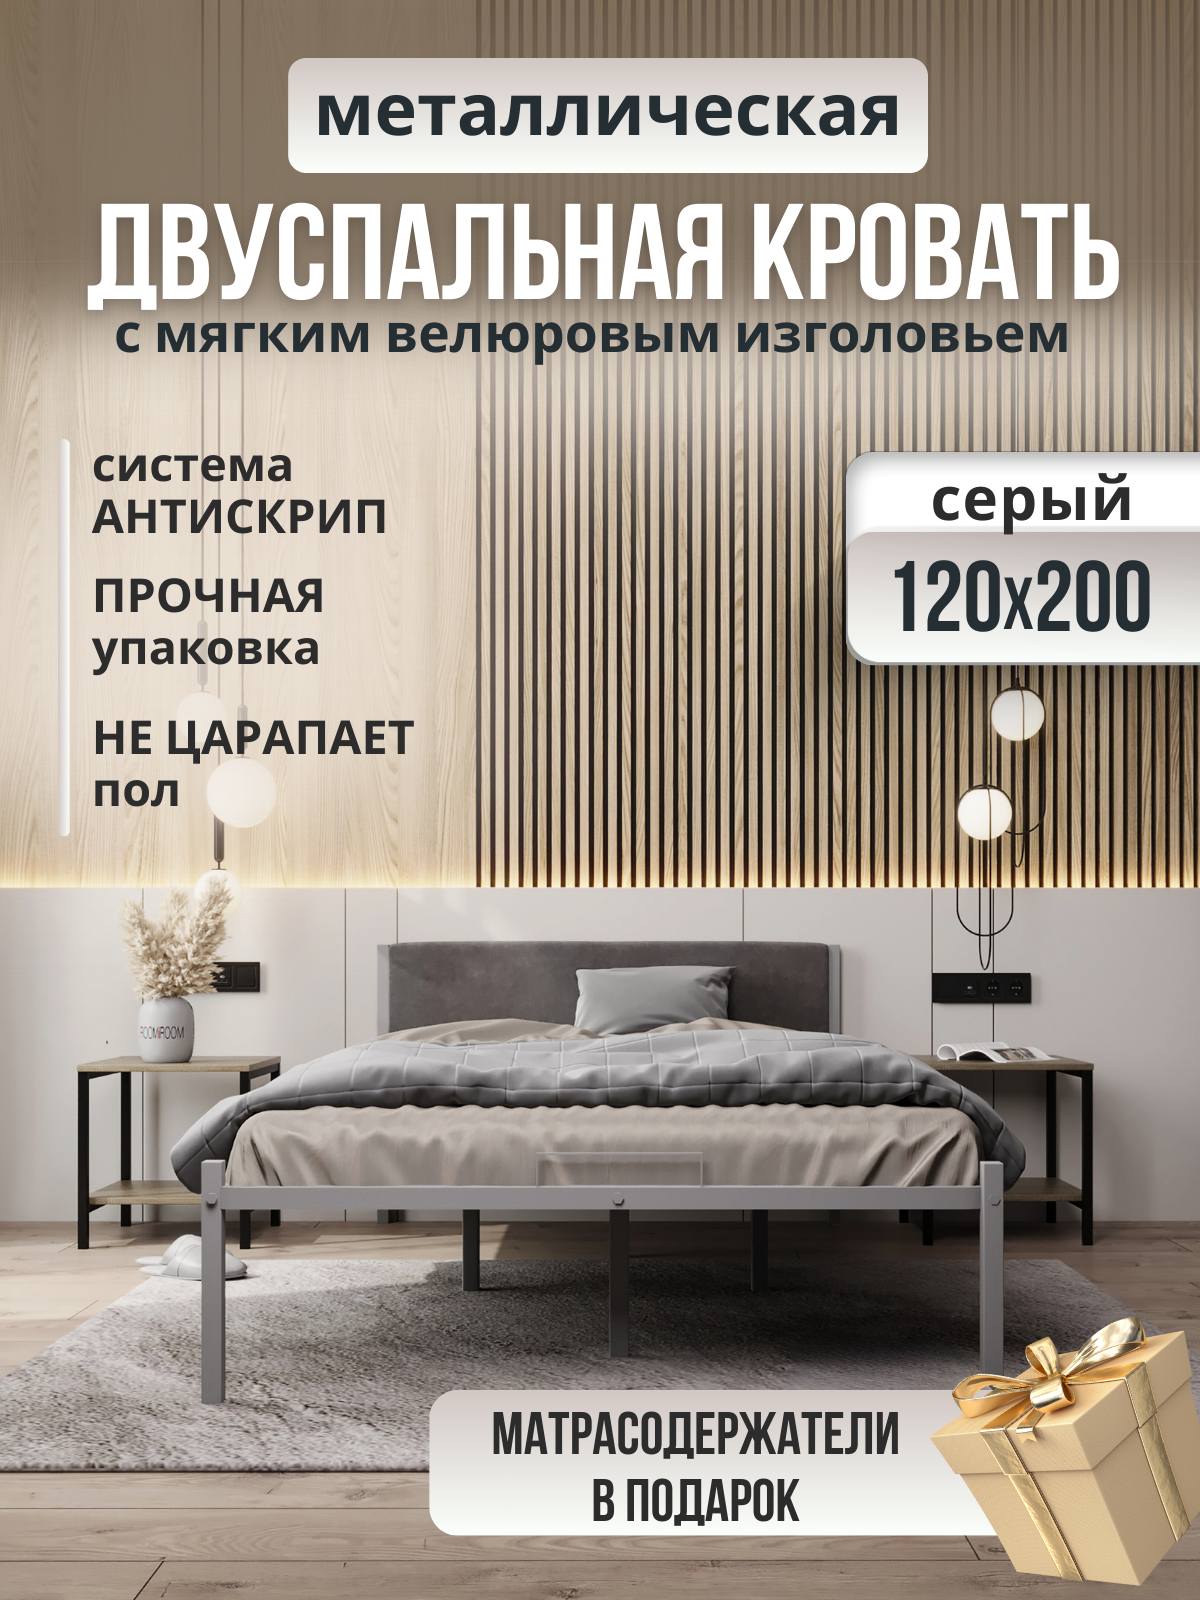 Металлическая кровать серая с мягким изголовьем серого цвета, 120 х 200